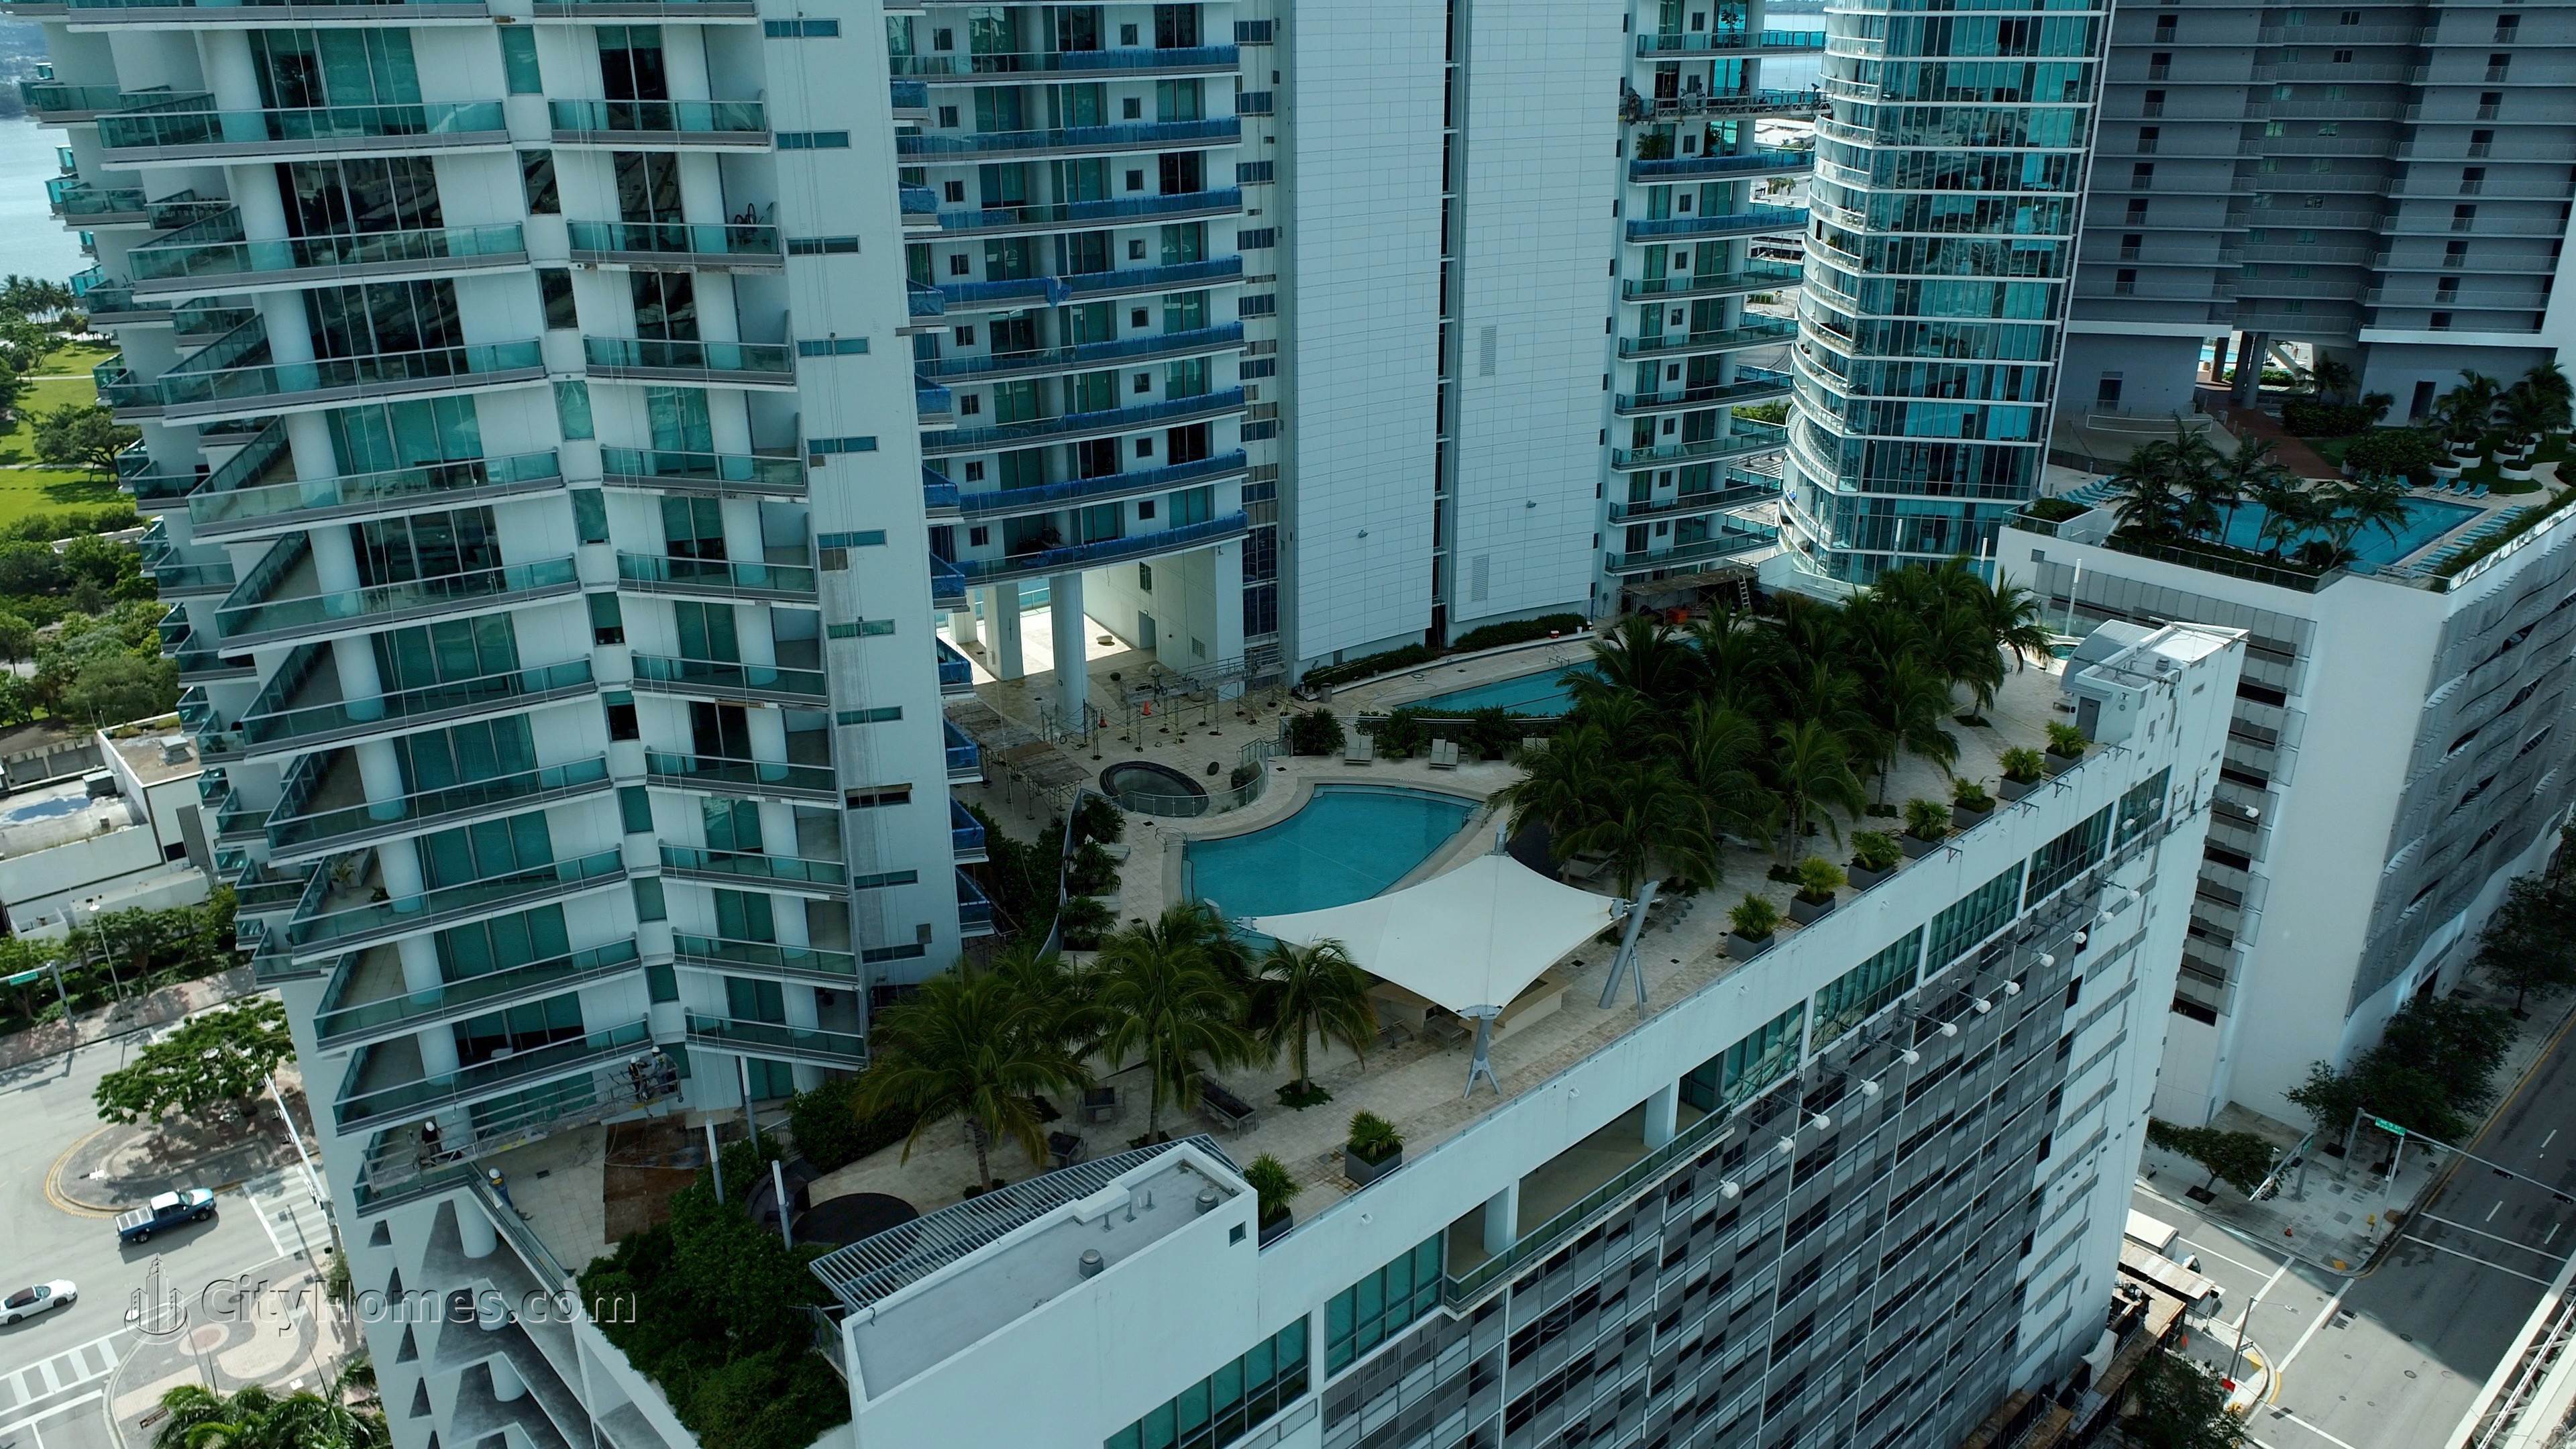 5. 900 Biscayne Bay κτίριο σε 900 Biscayne Boulevard, Miami, FL 33132